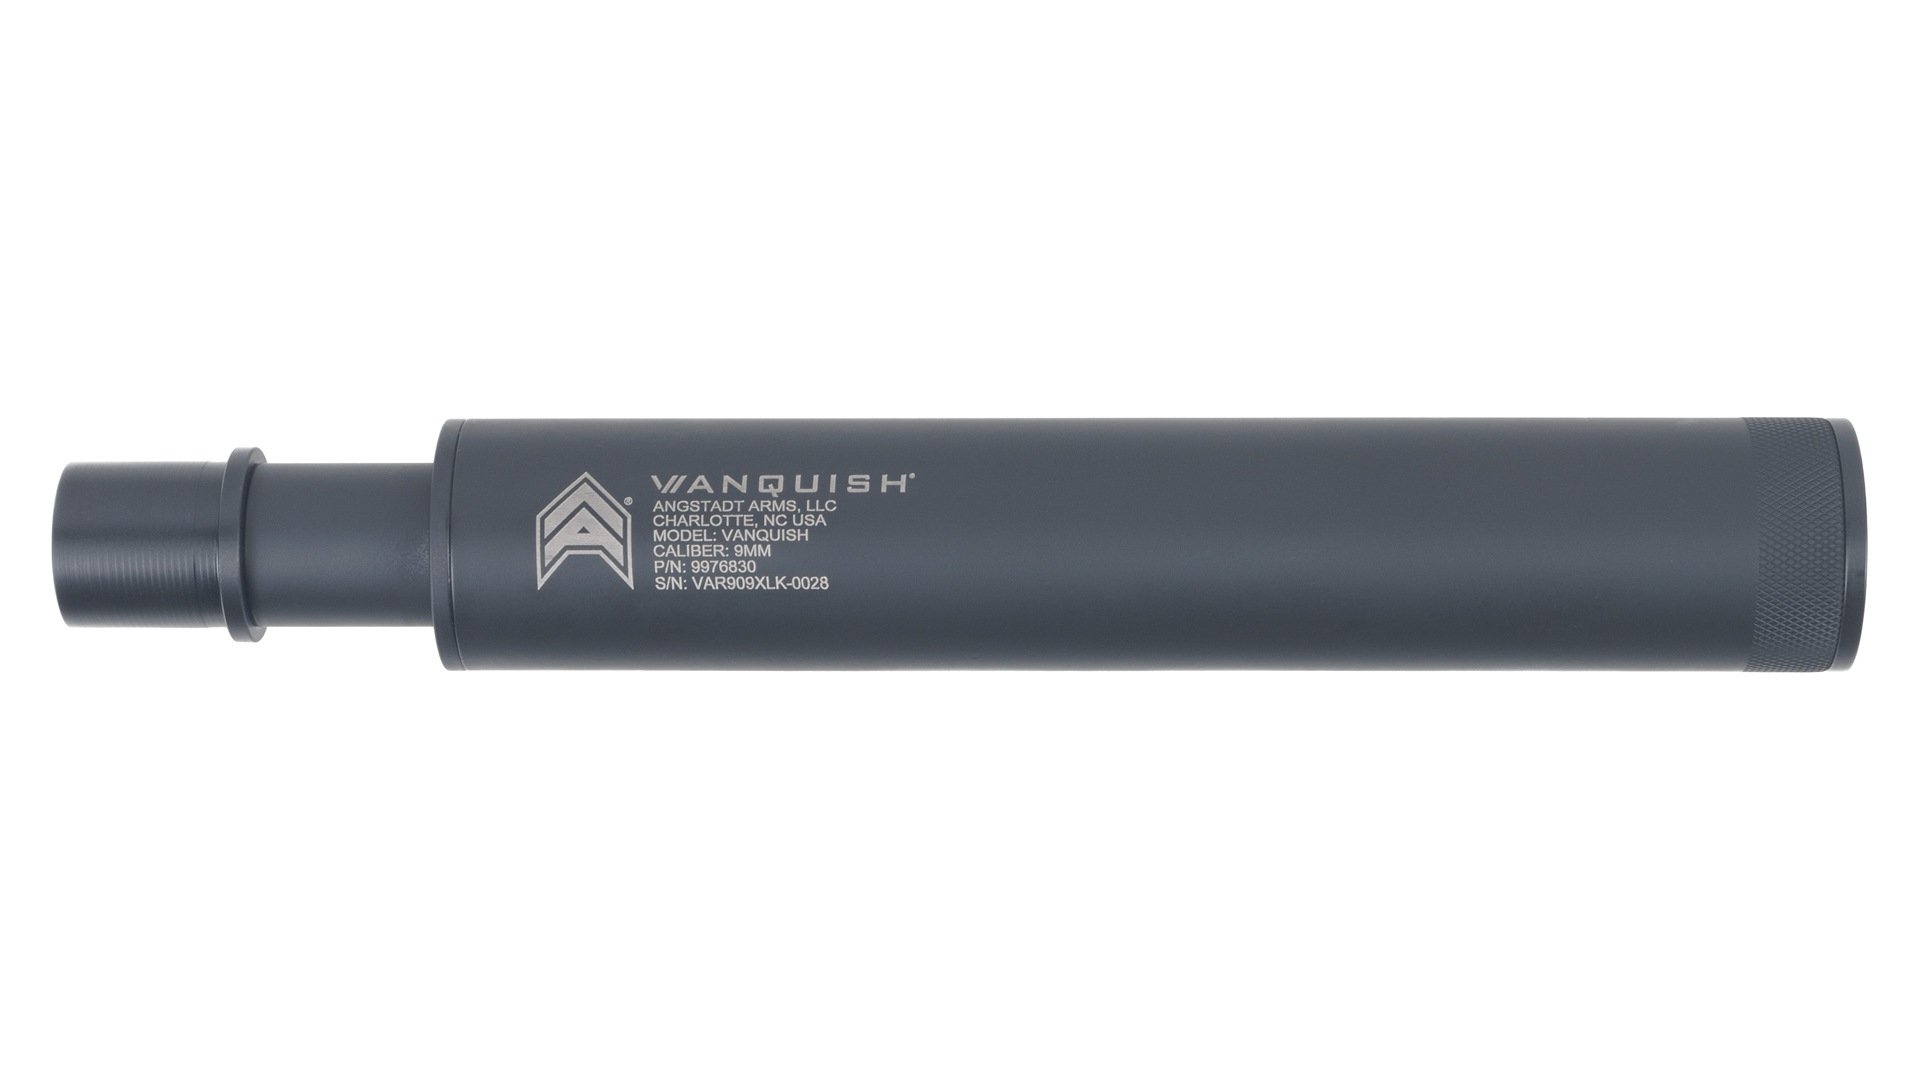 Rainier Arms Match 6mm ARC Barrel - (Nitride)